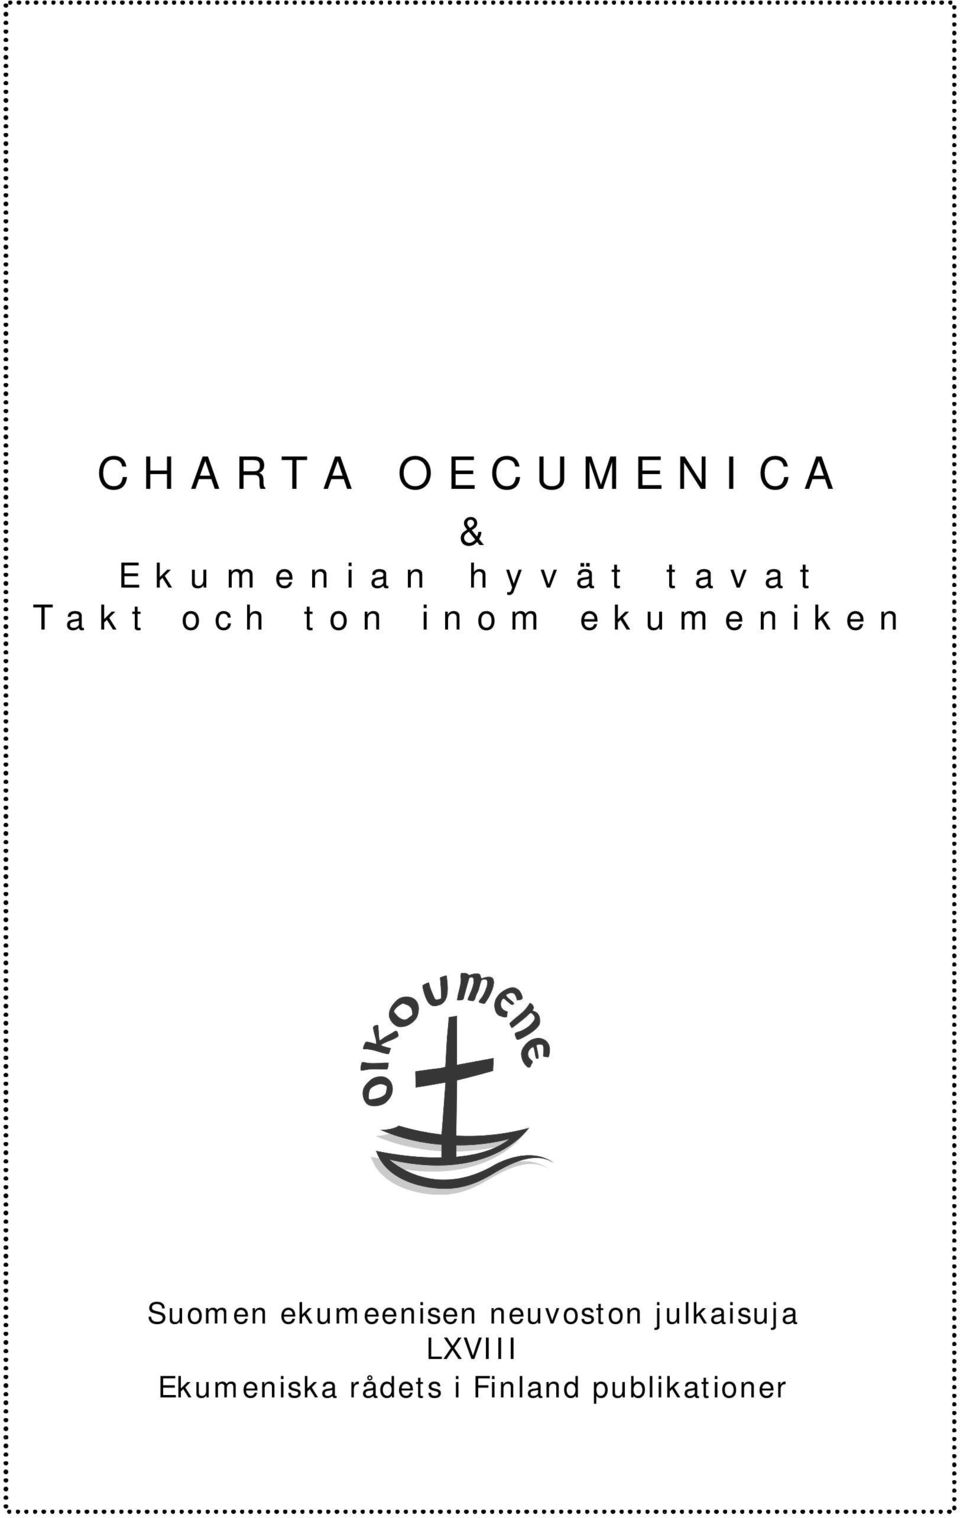 Suomen ekumeenisen neuvoston julkaisuja